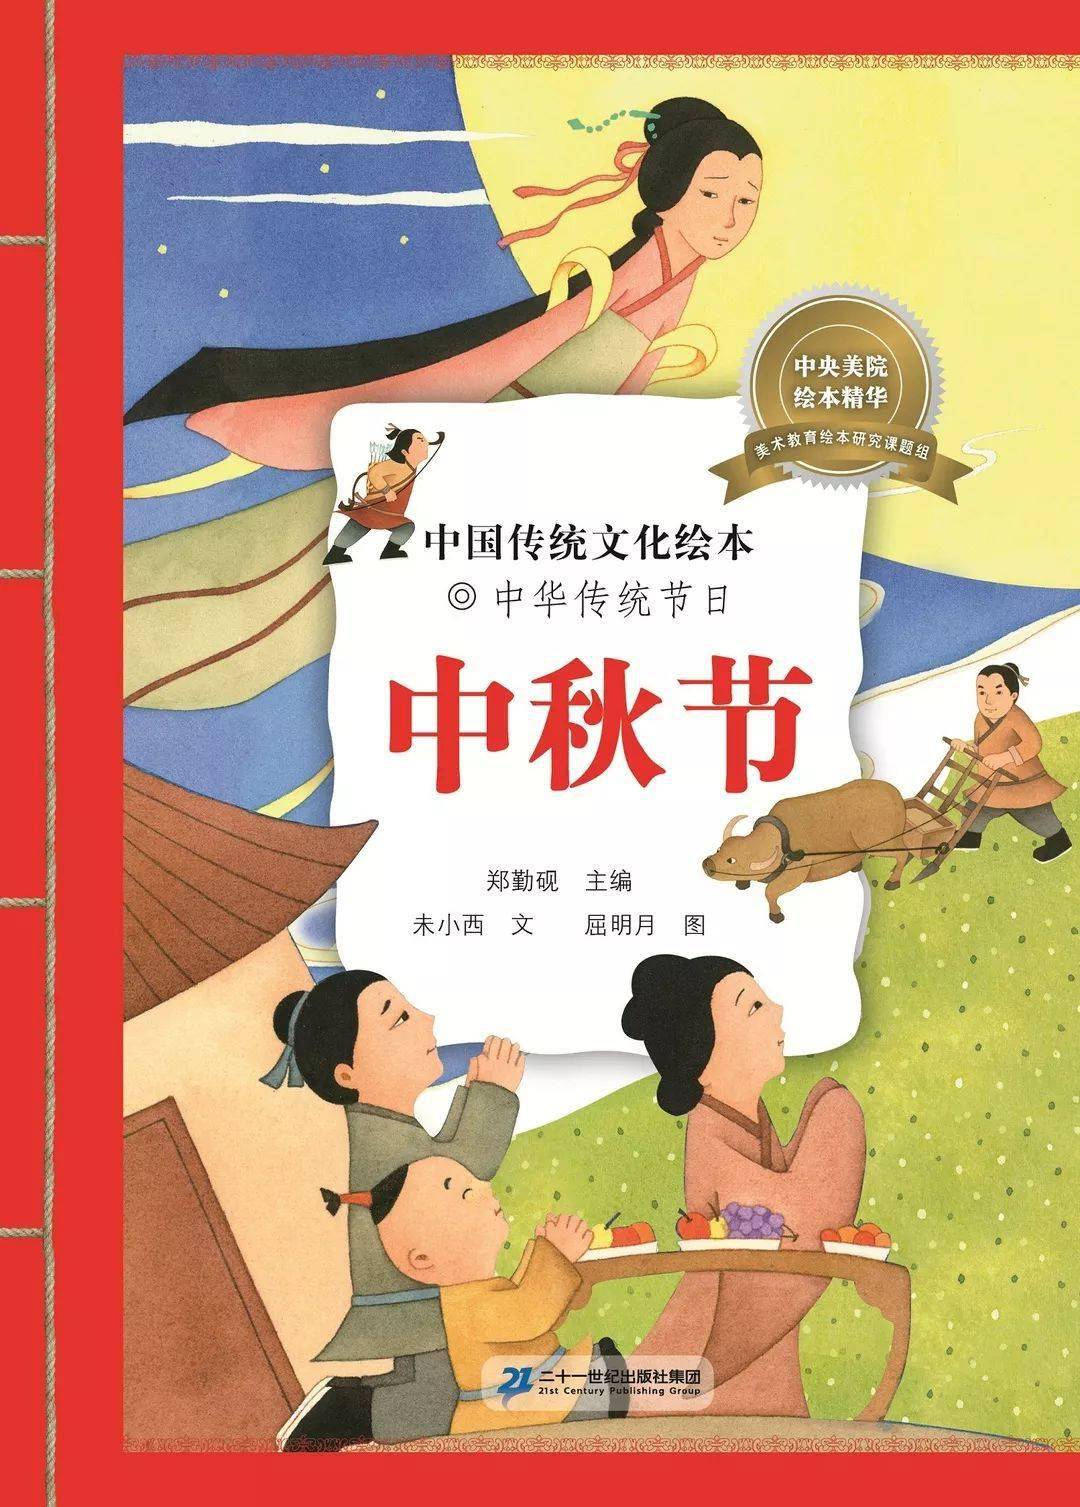 【大灰狼睡前故事第436期】中国传统文化绘本|中秋节